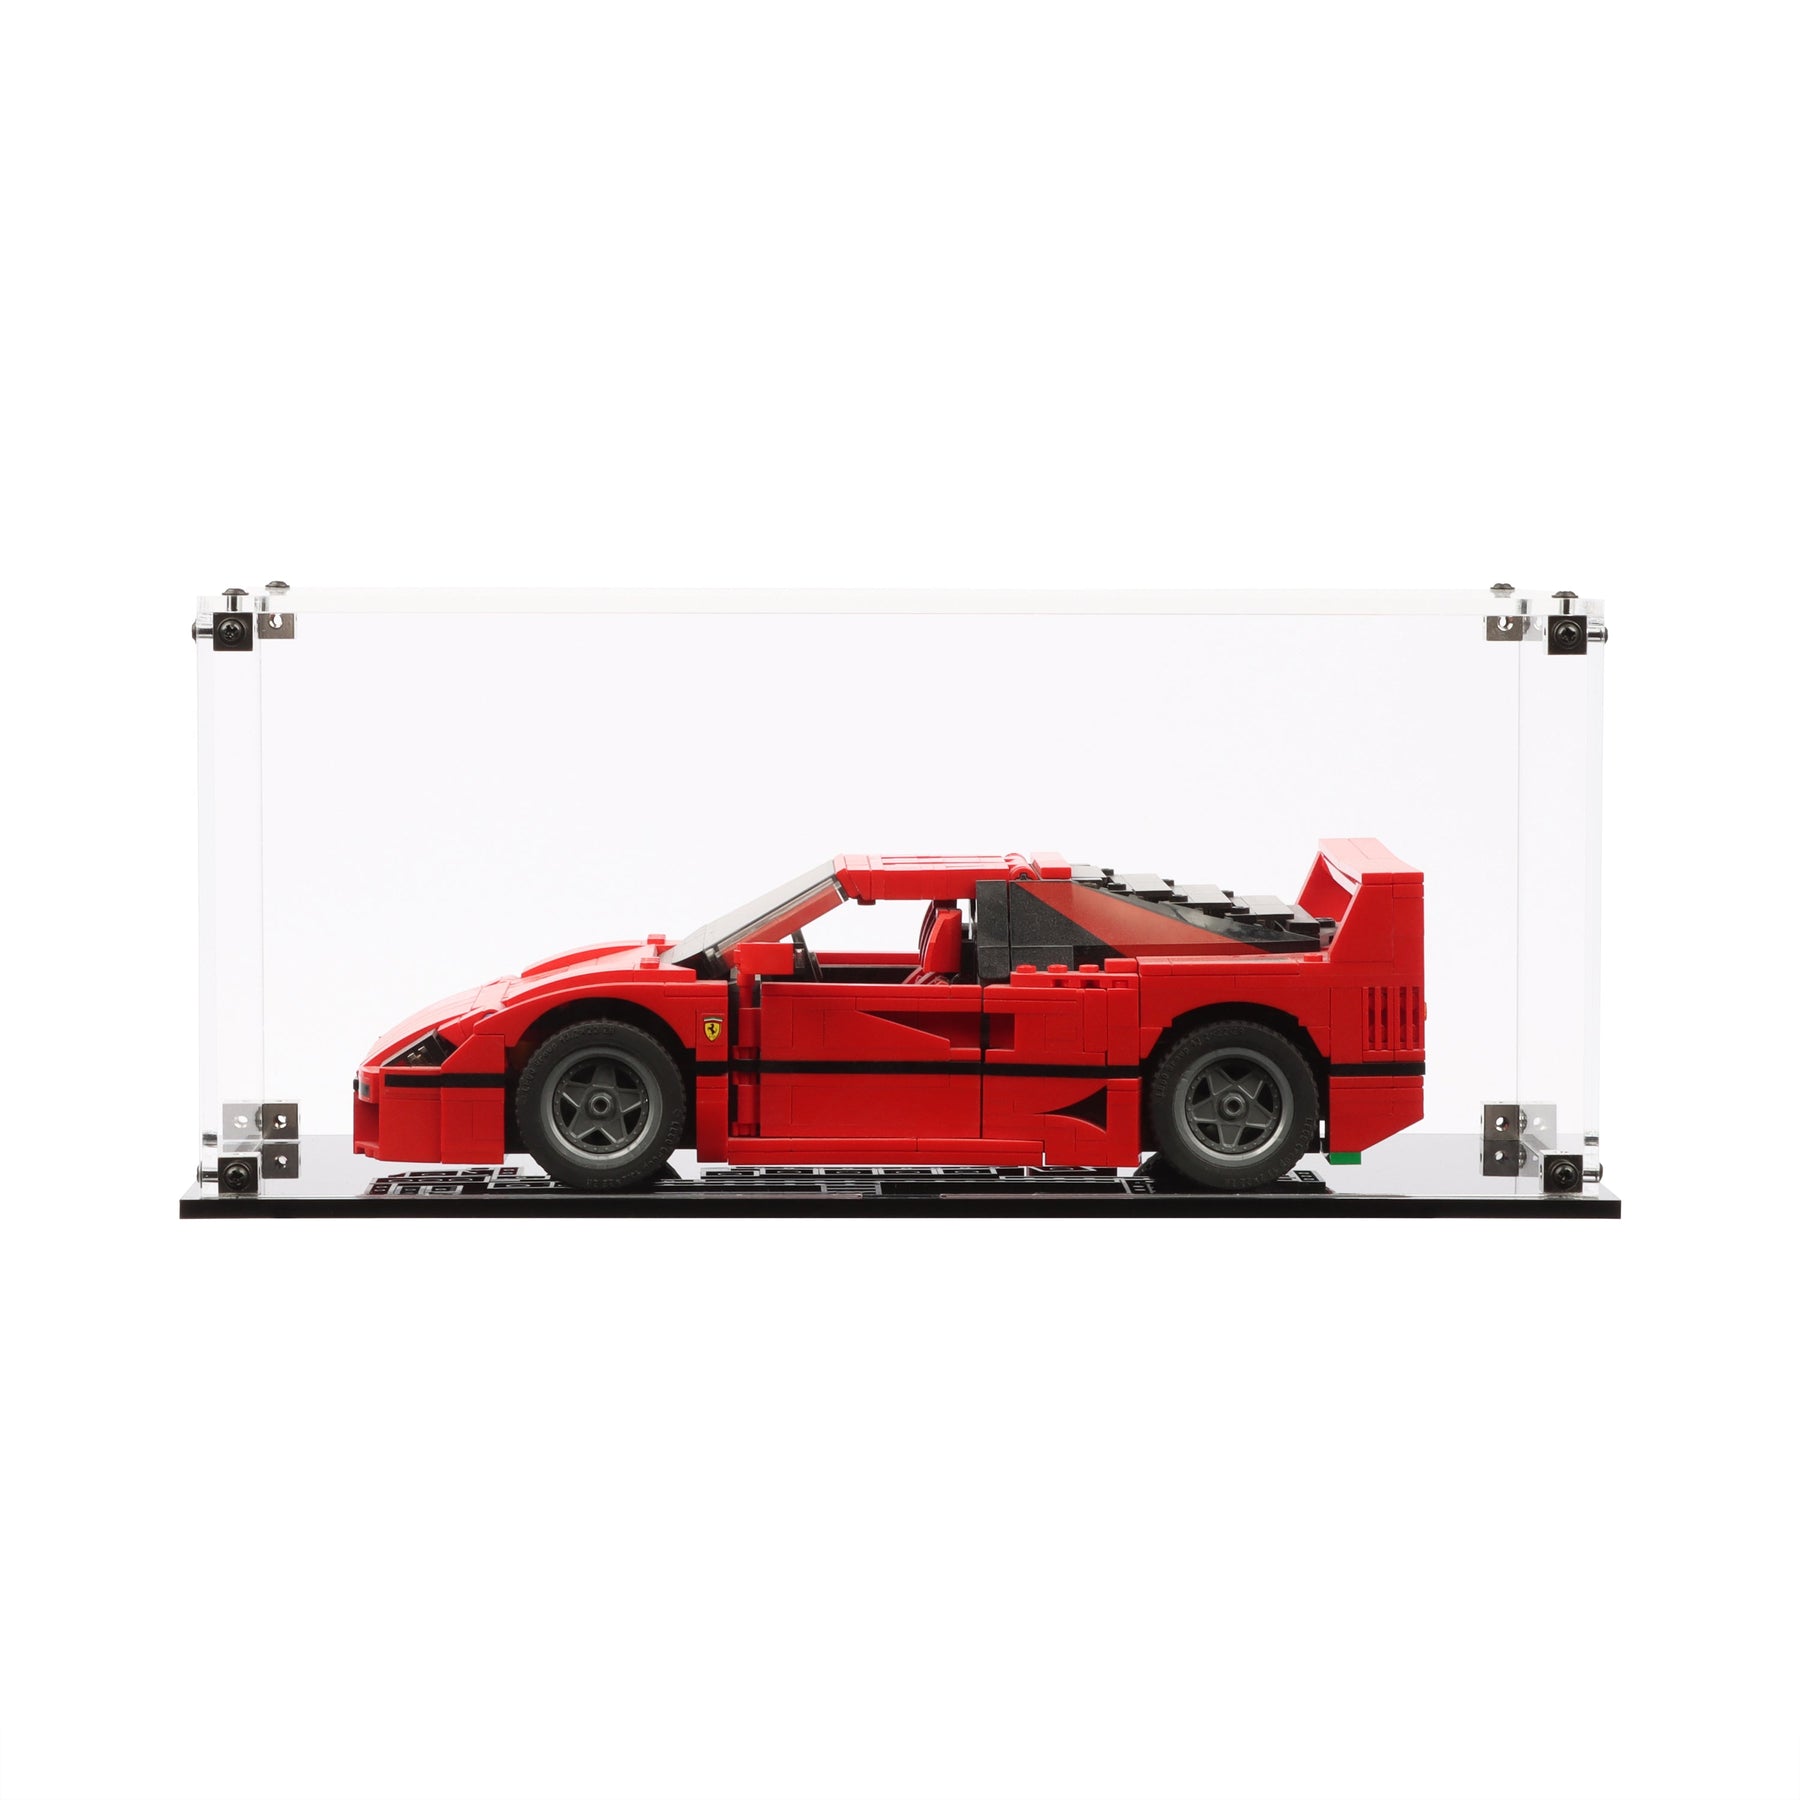 Lego 10248 Ferrari F40 Display Case